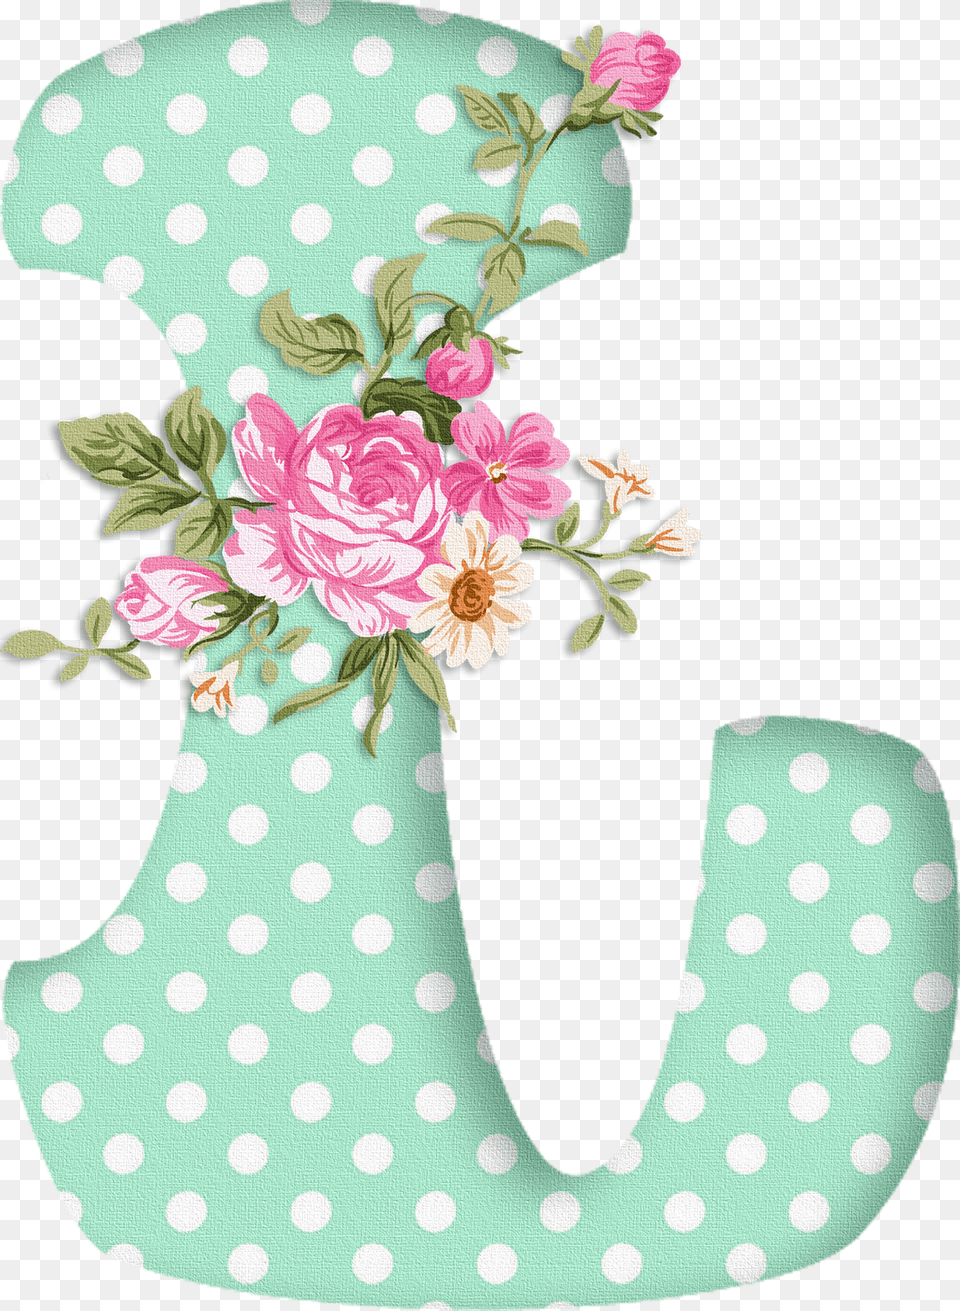 Moldes De Letras Con Flores Para Imprimir, Pattern, Art, Floral Design, Graphics Png